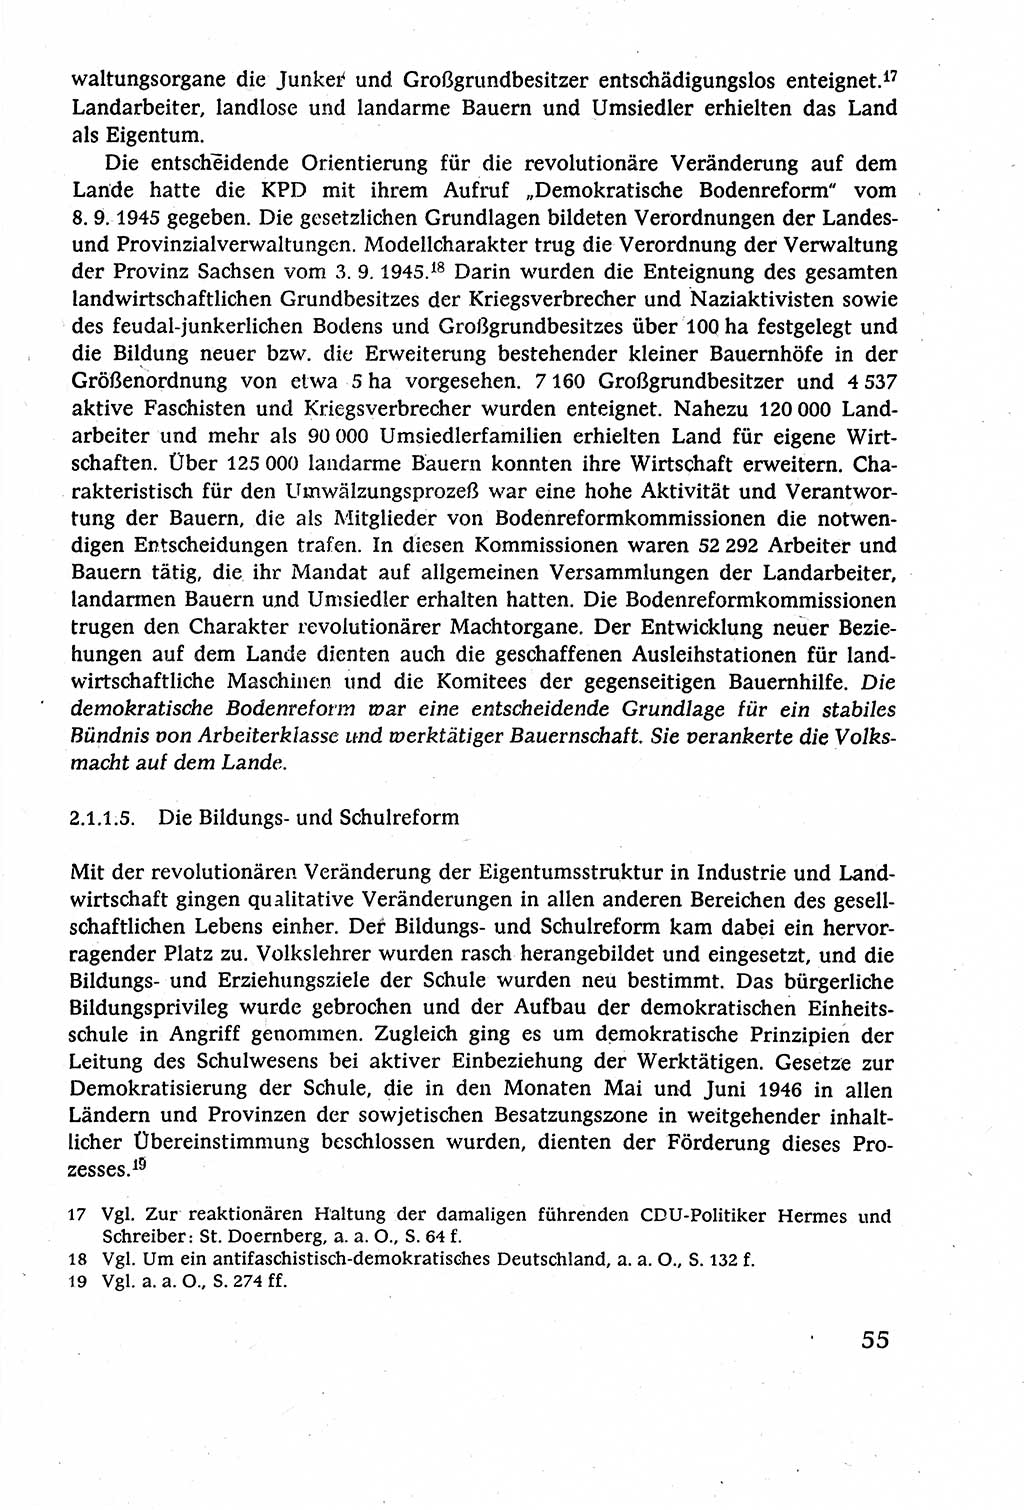 Staatsrecht der DDR (Deutsche Demokratische Republik), Lehrbuch 1977, Seite 55 (St.-R. DDR Lb. 1977, S. 55)